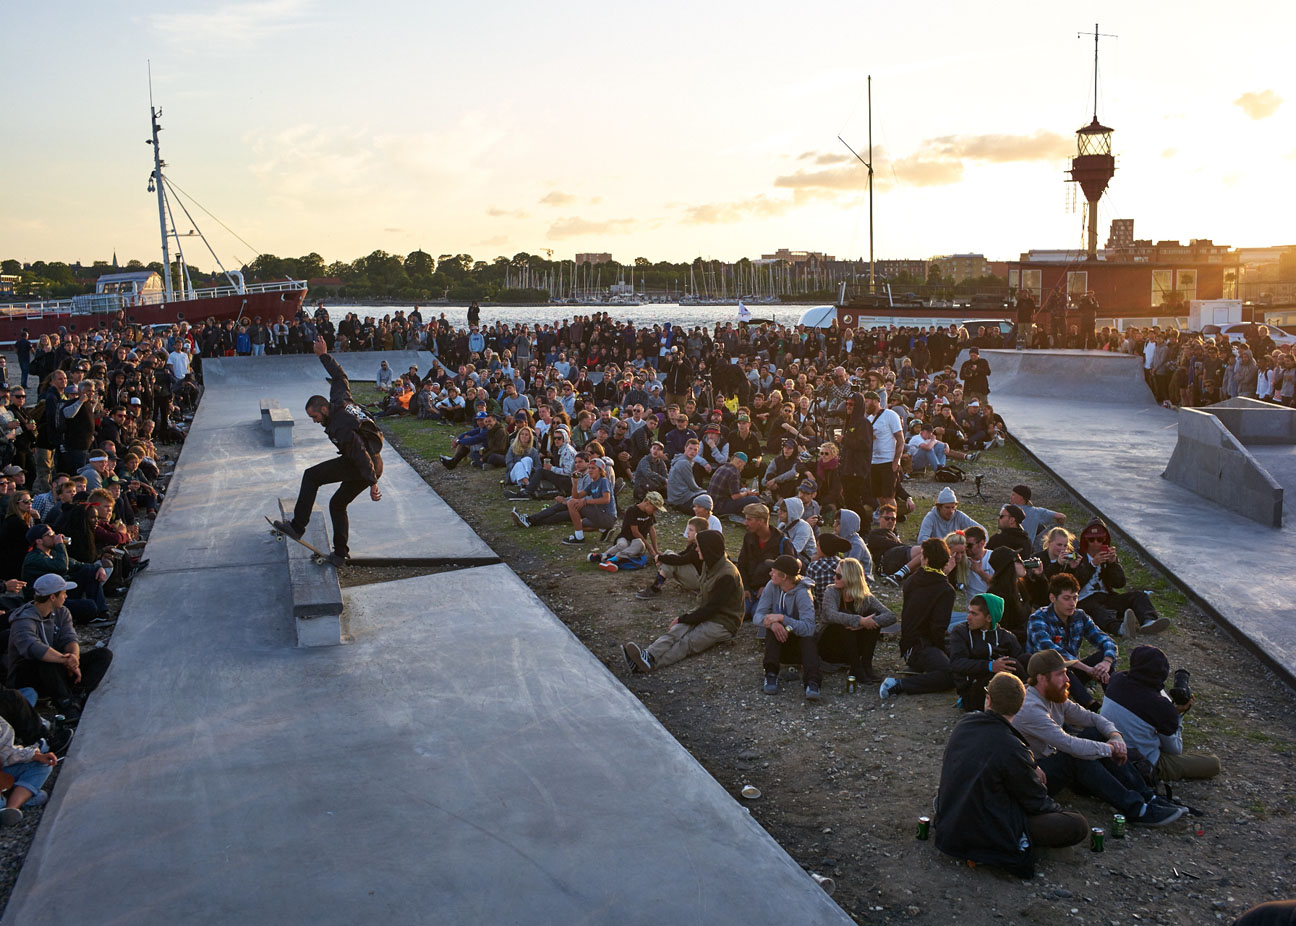 Monster Energy's Skateboarders at the Copenhagen Pro